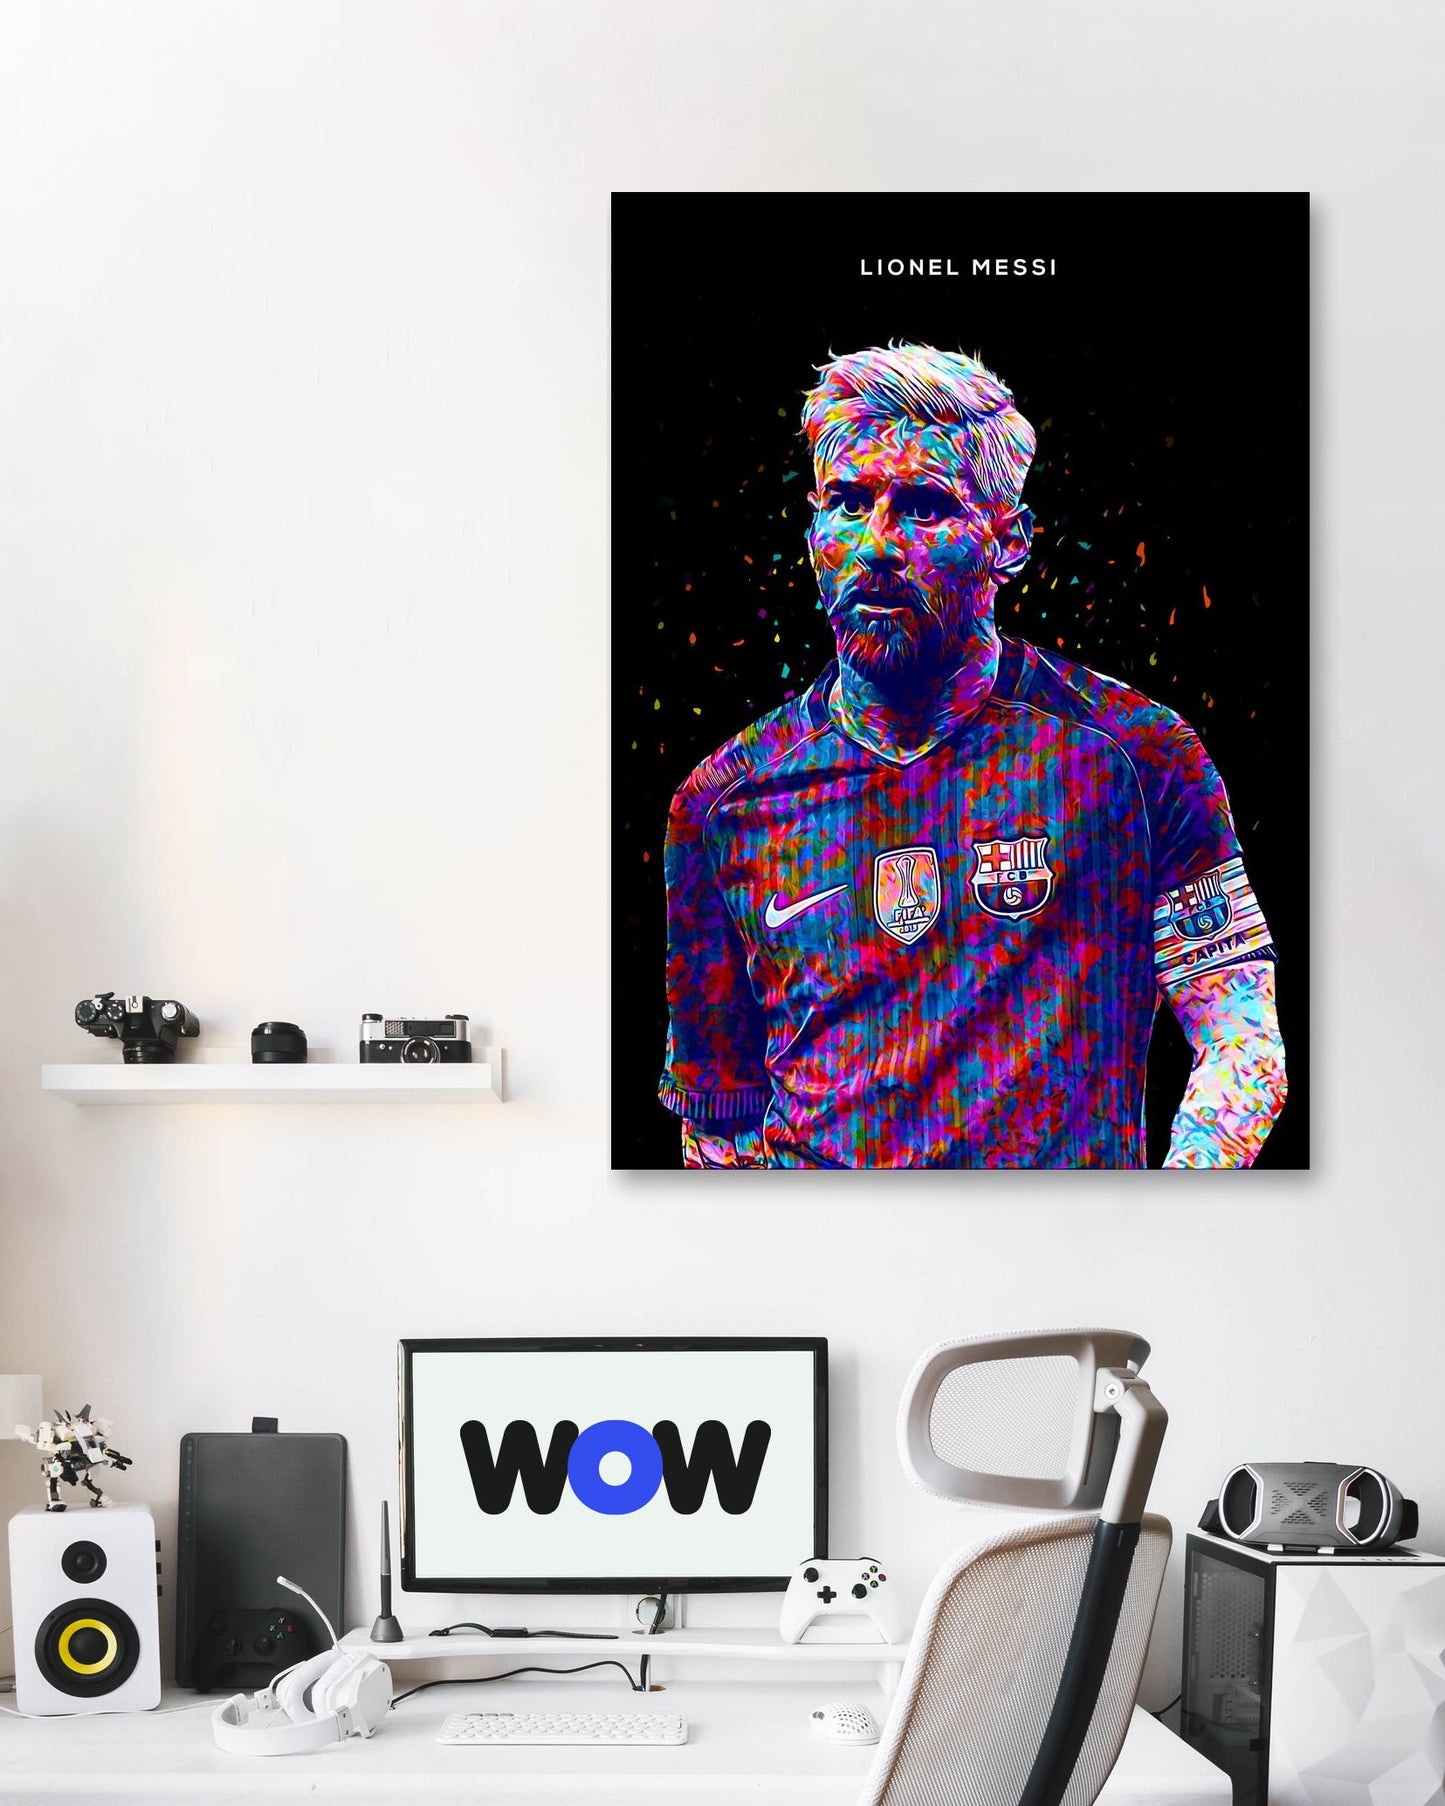 Lionel Messi - @Dochin